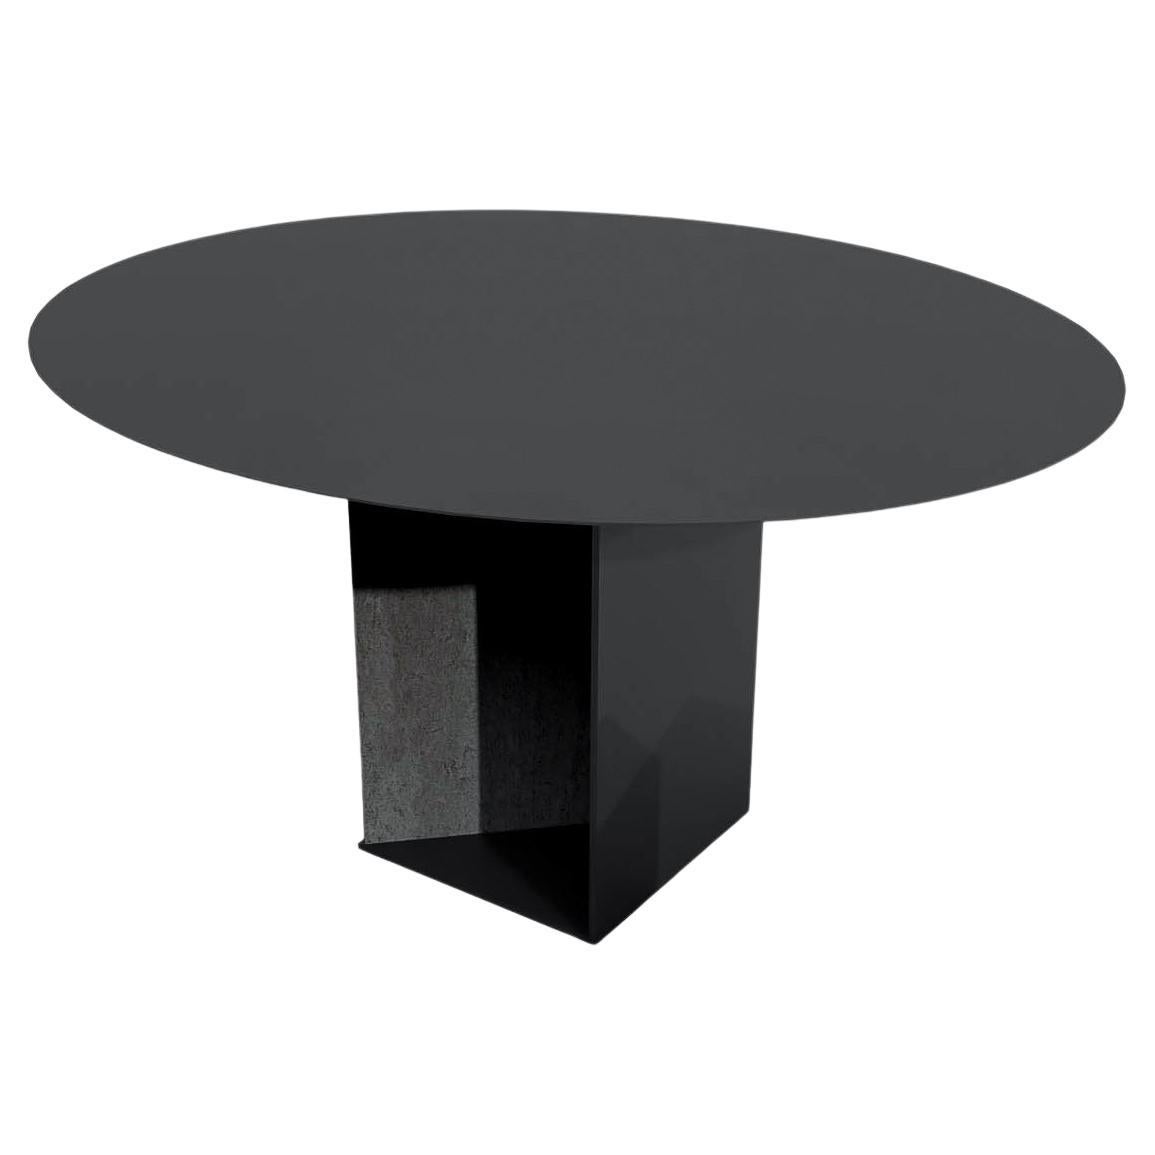 barh.design Dining Room Tables